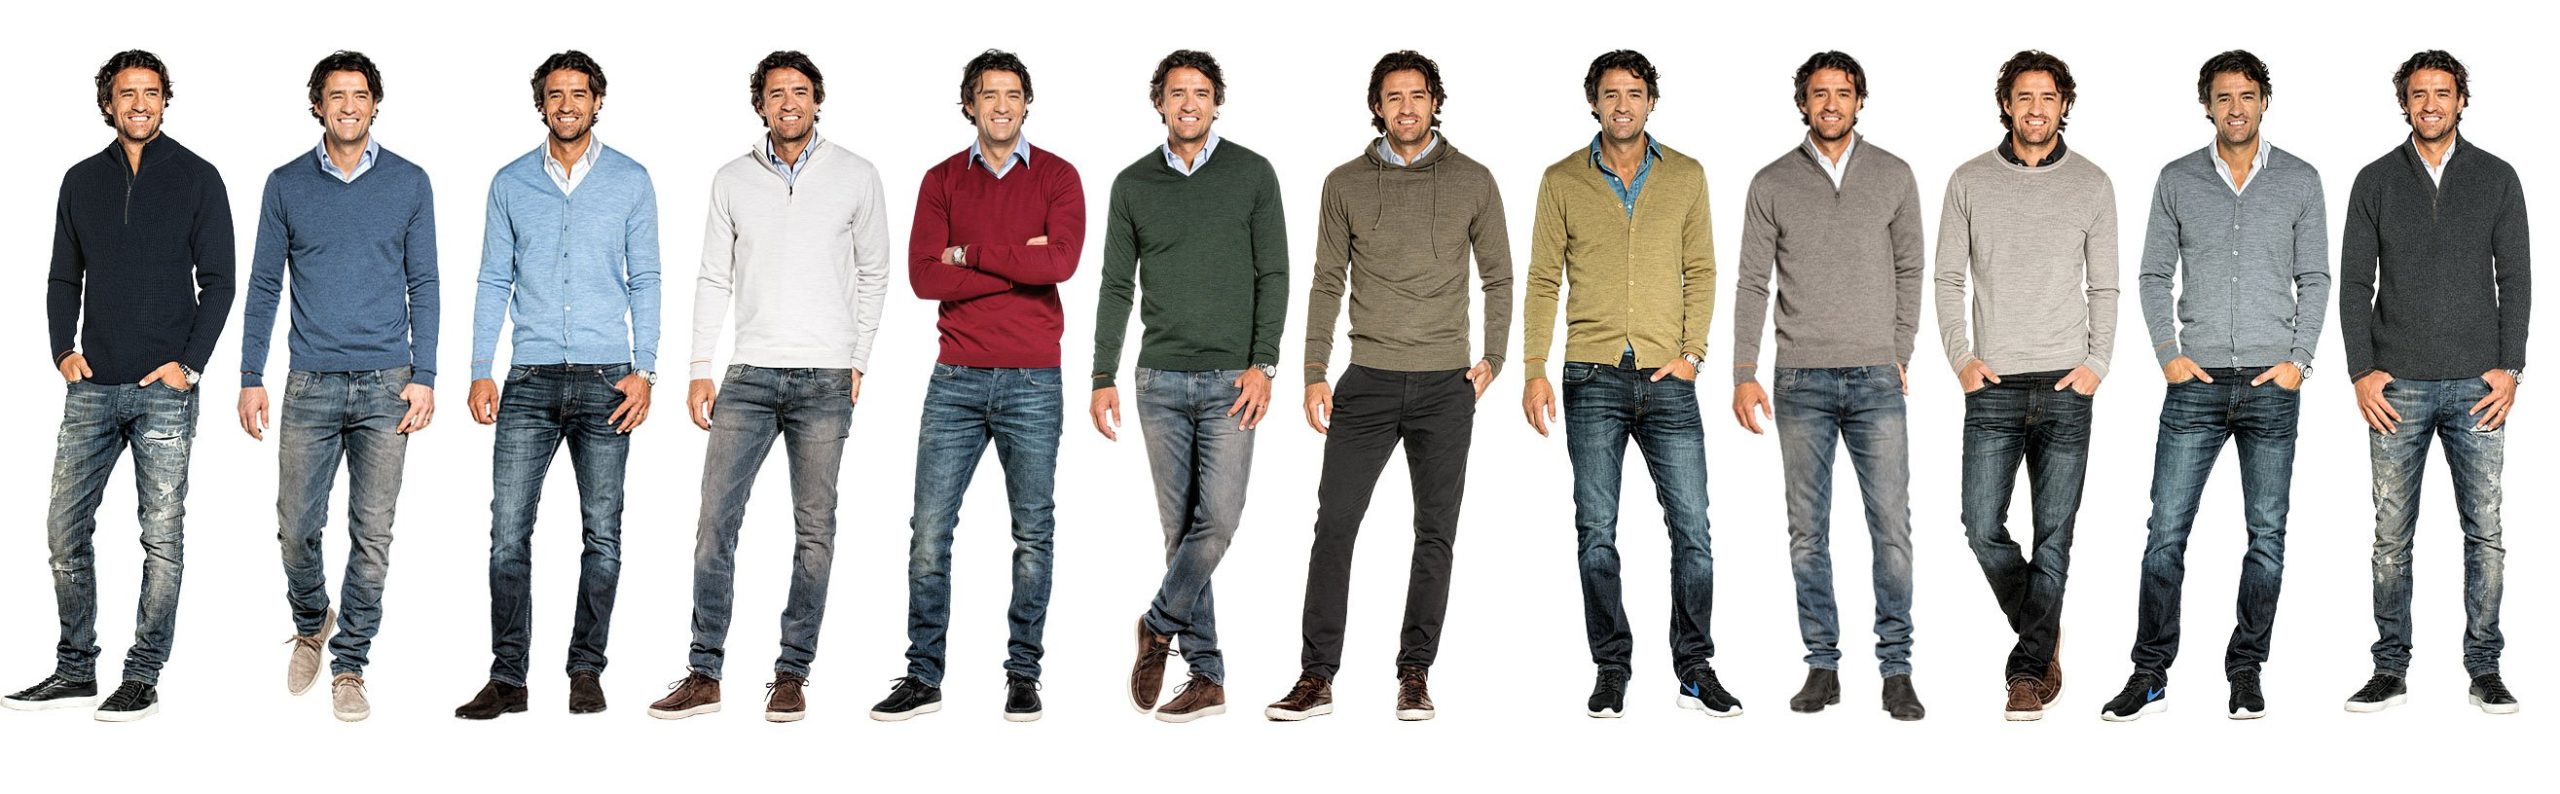 Joe merino model in een rij met verschillende truien